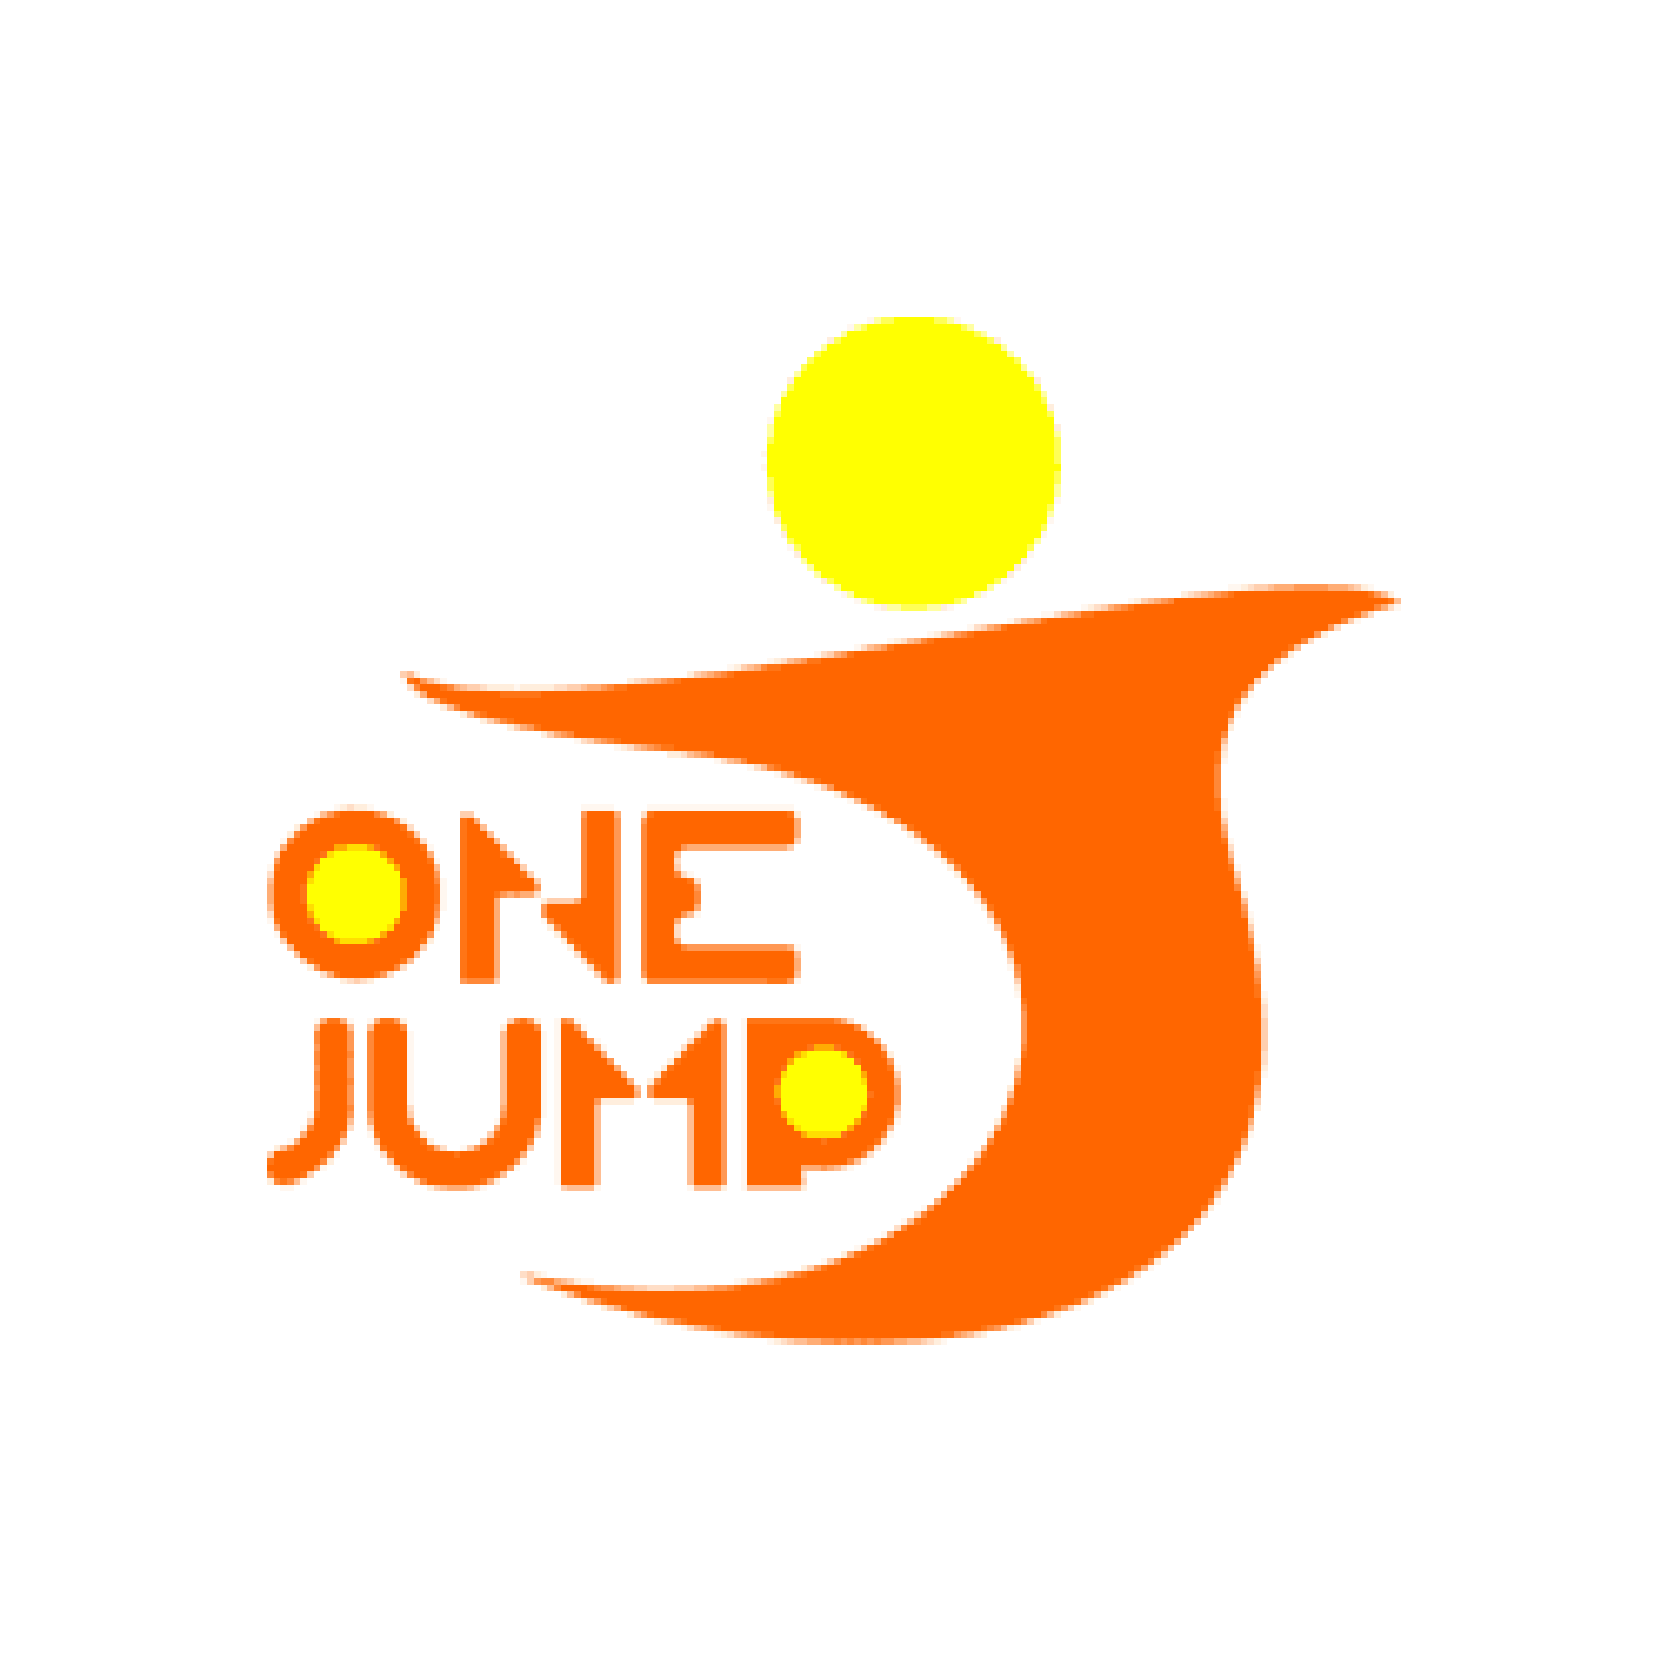 One Jump